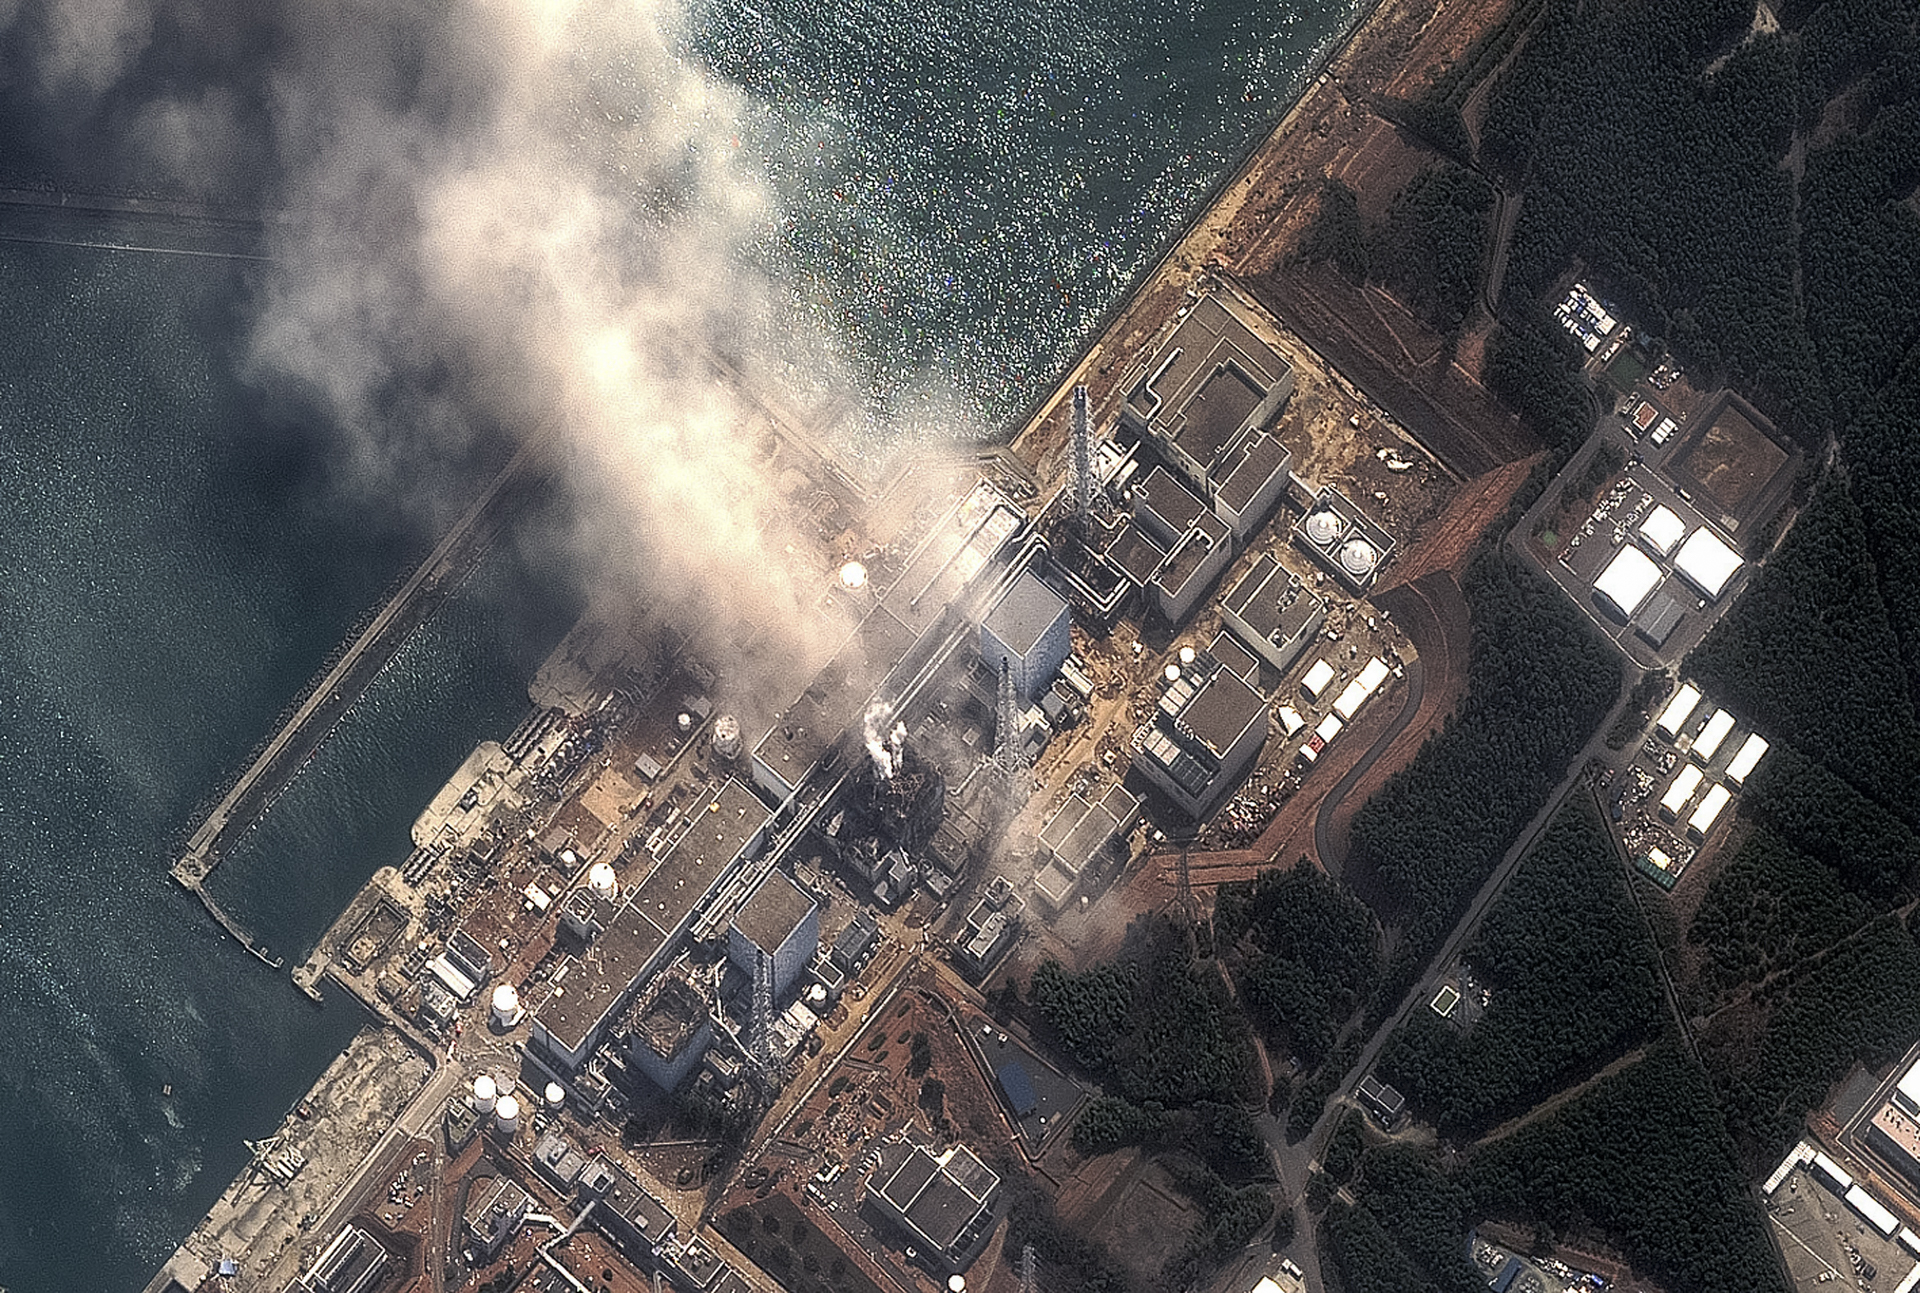 fukushima reactor meltdown in japan